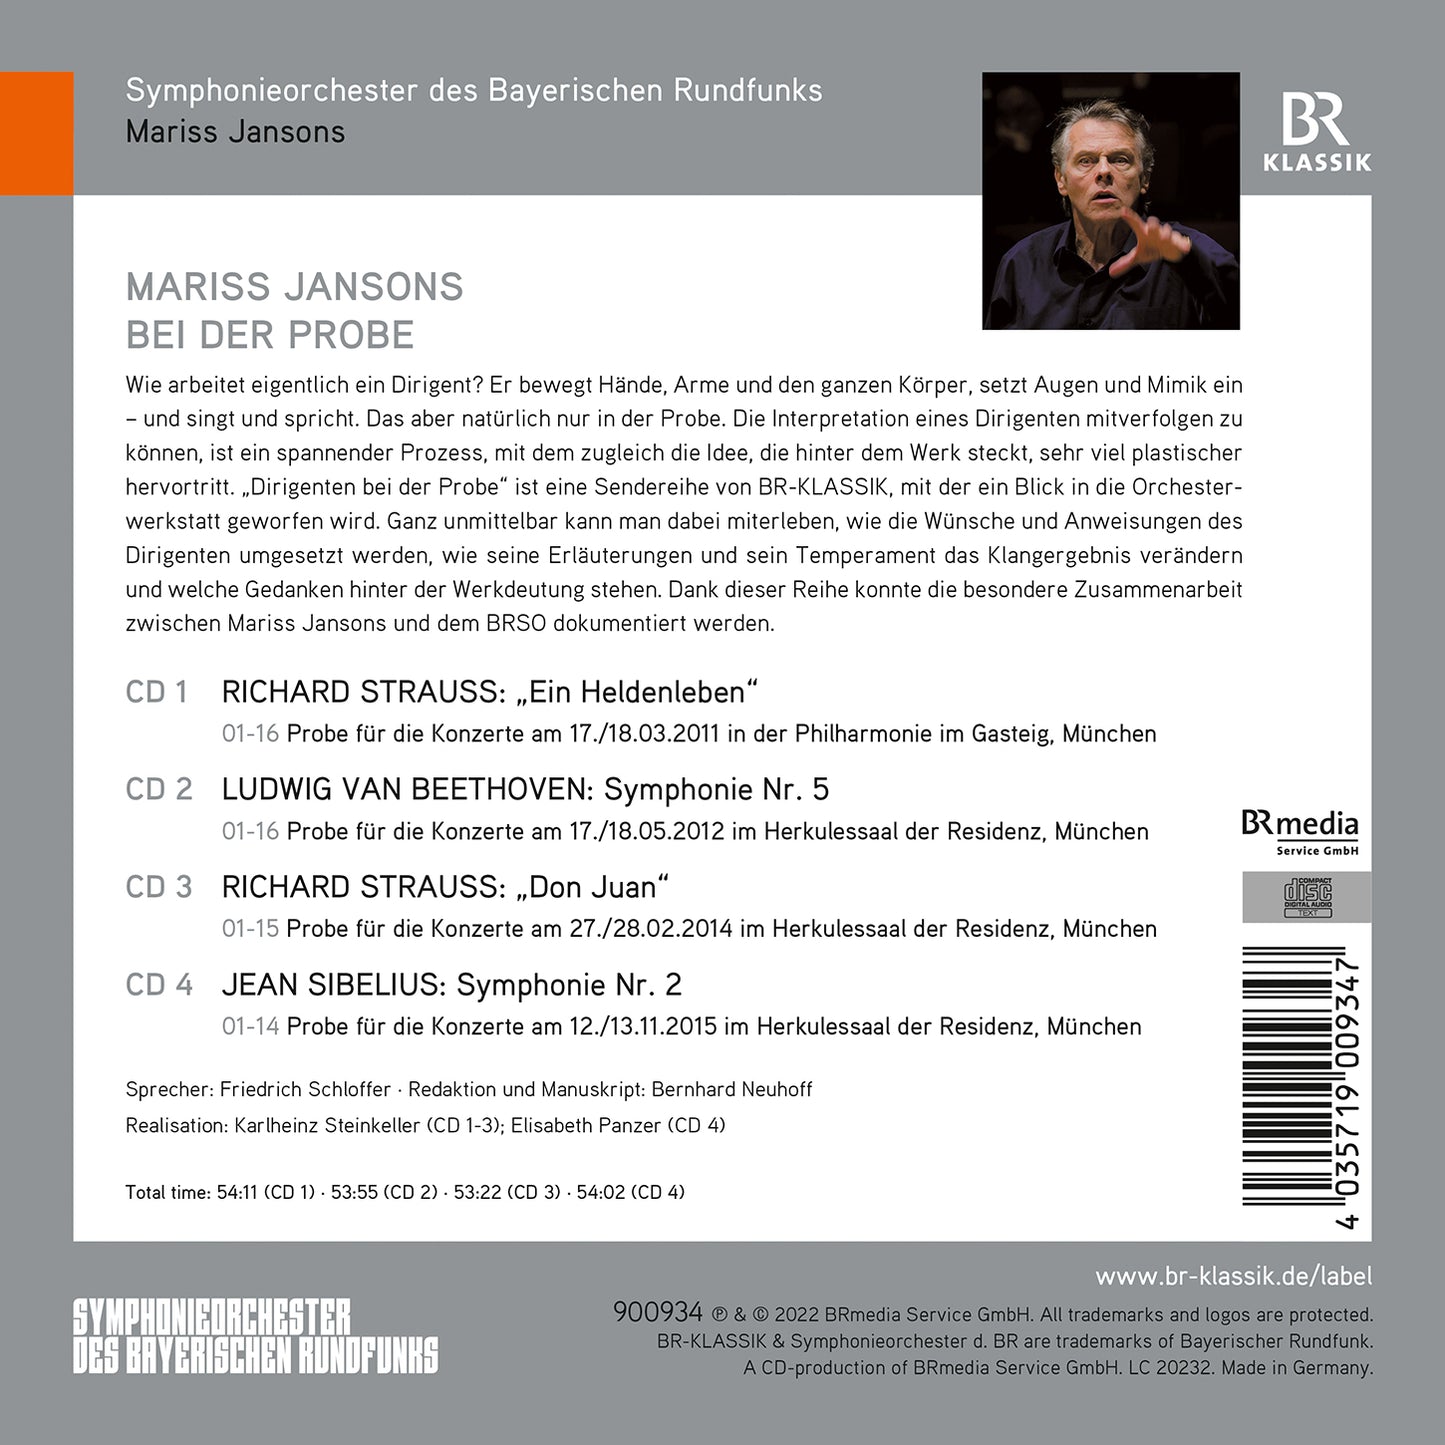 Mariss Jansons - Dirigenten bei der Probe, Box 2 [4 CDs]